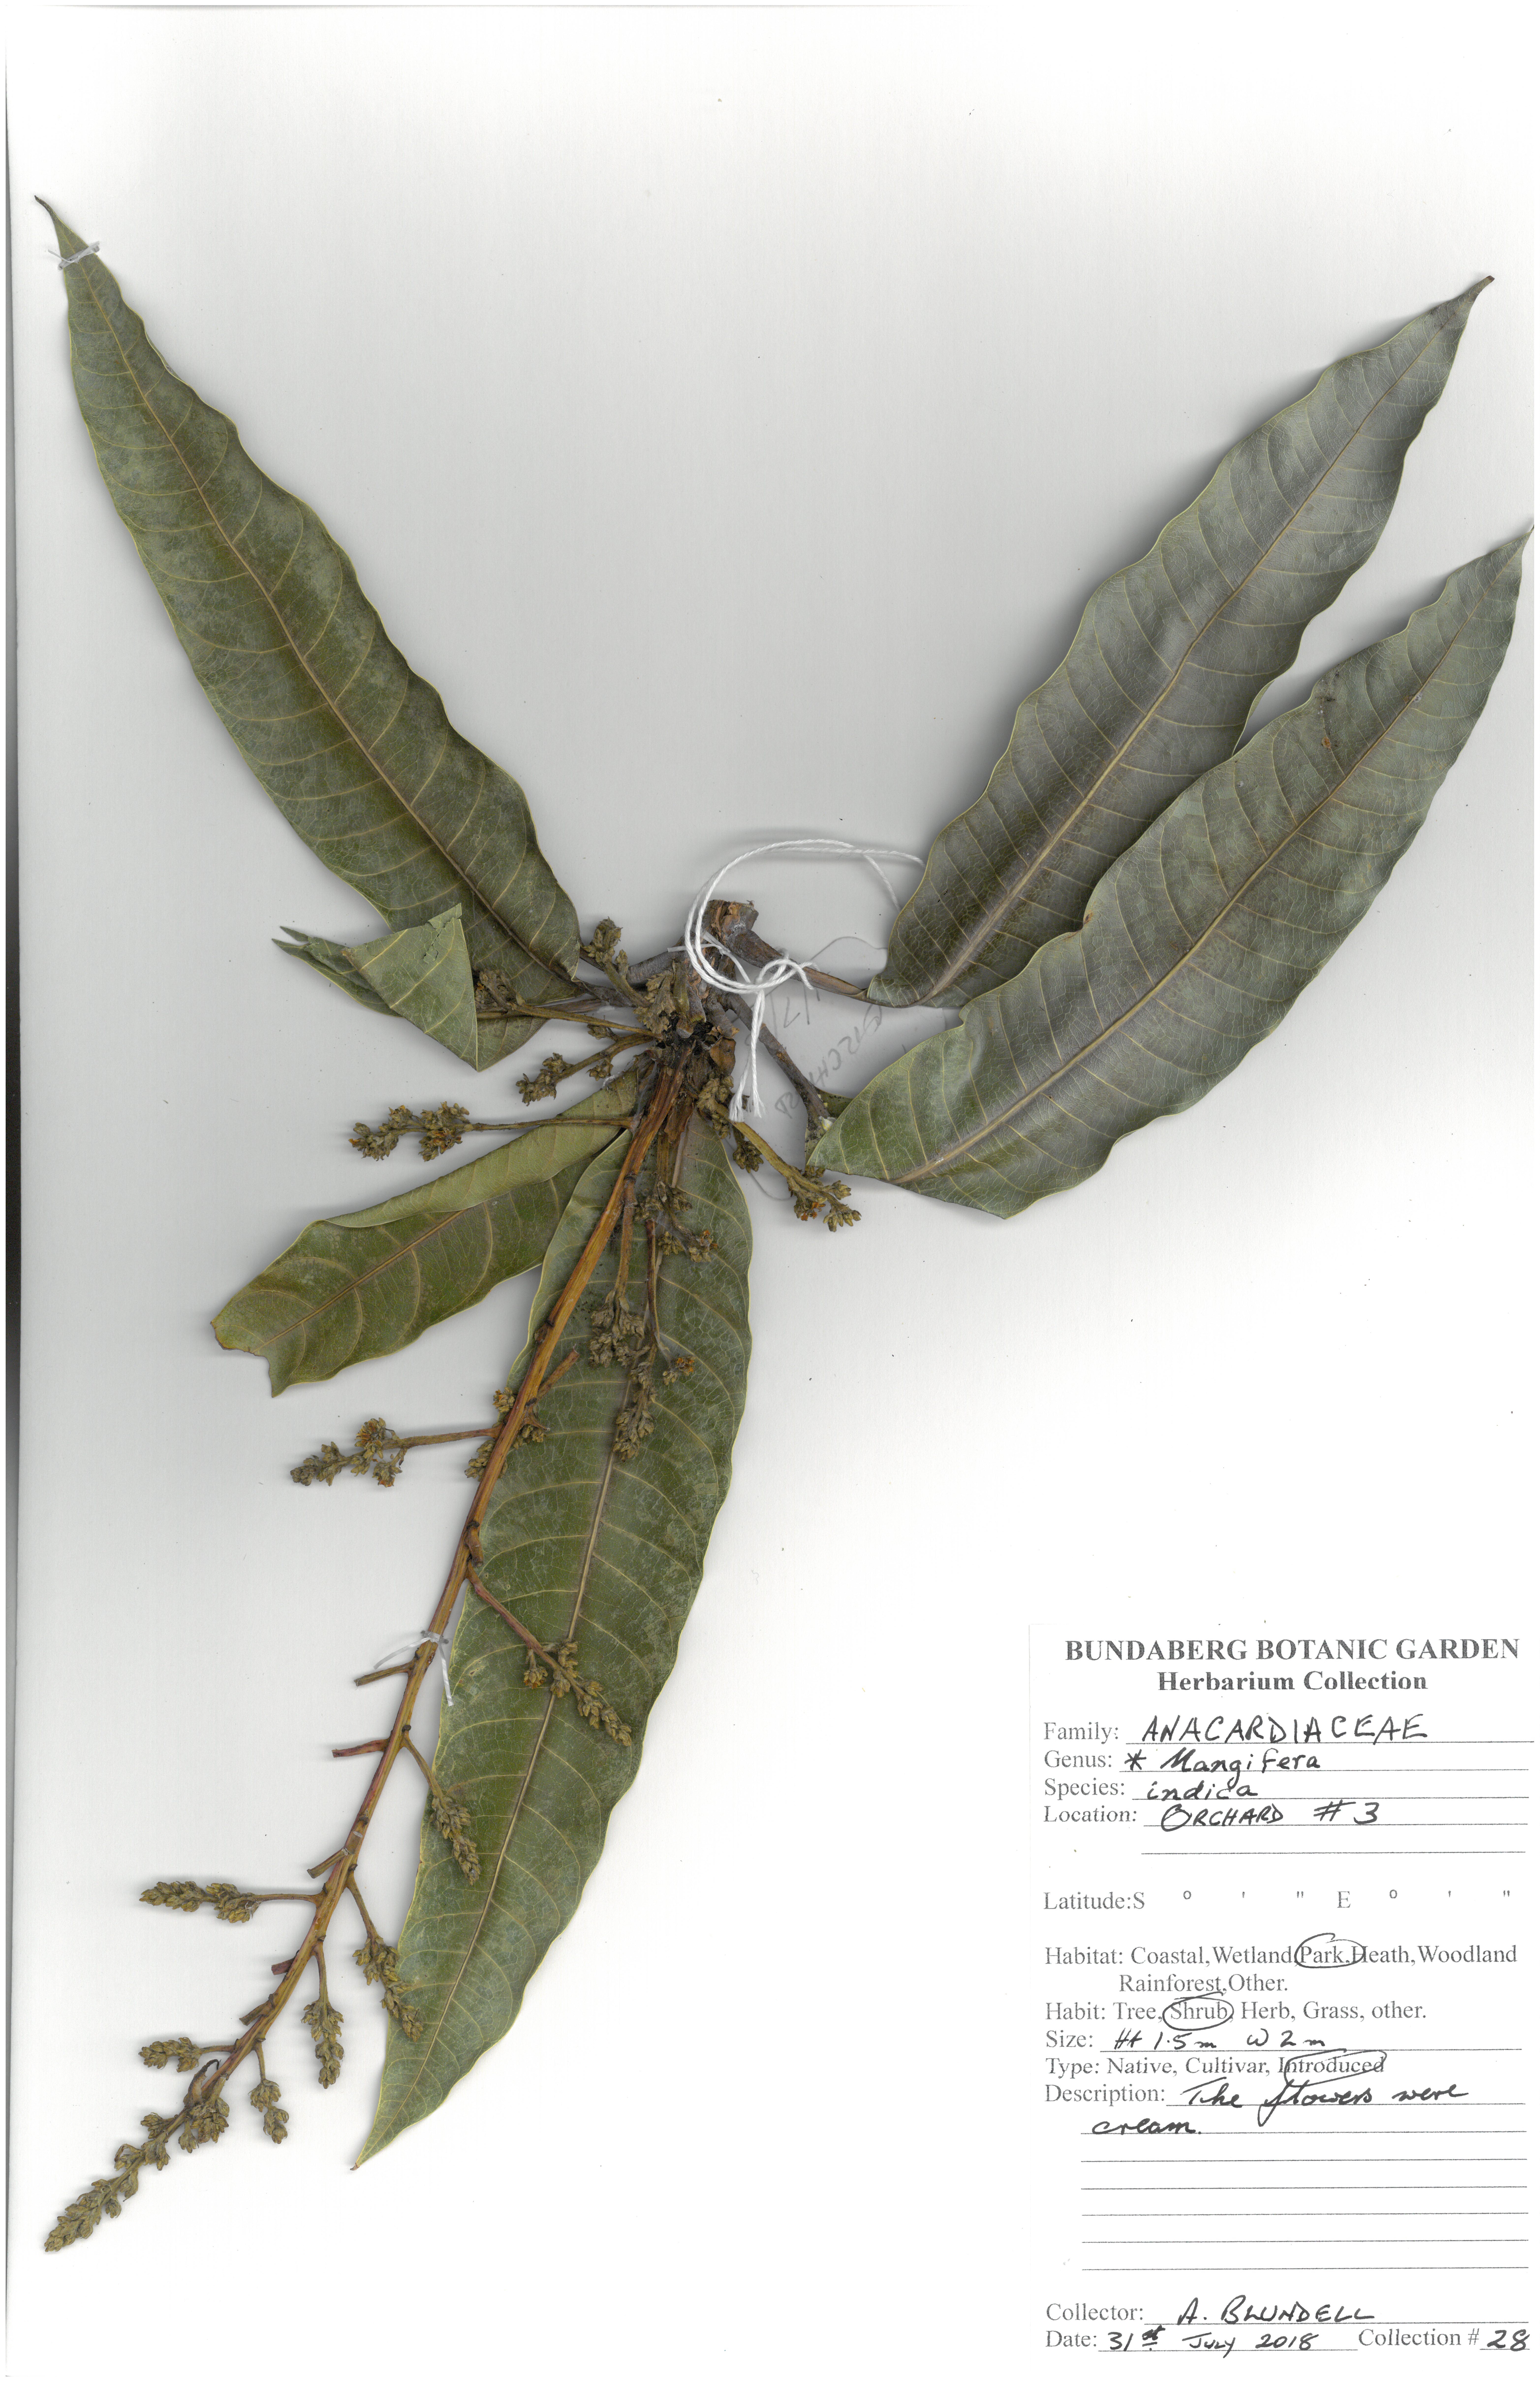 Anacardiaceae magifera indica